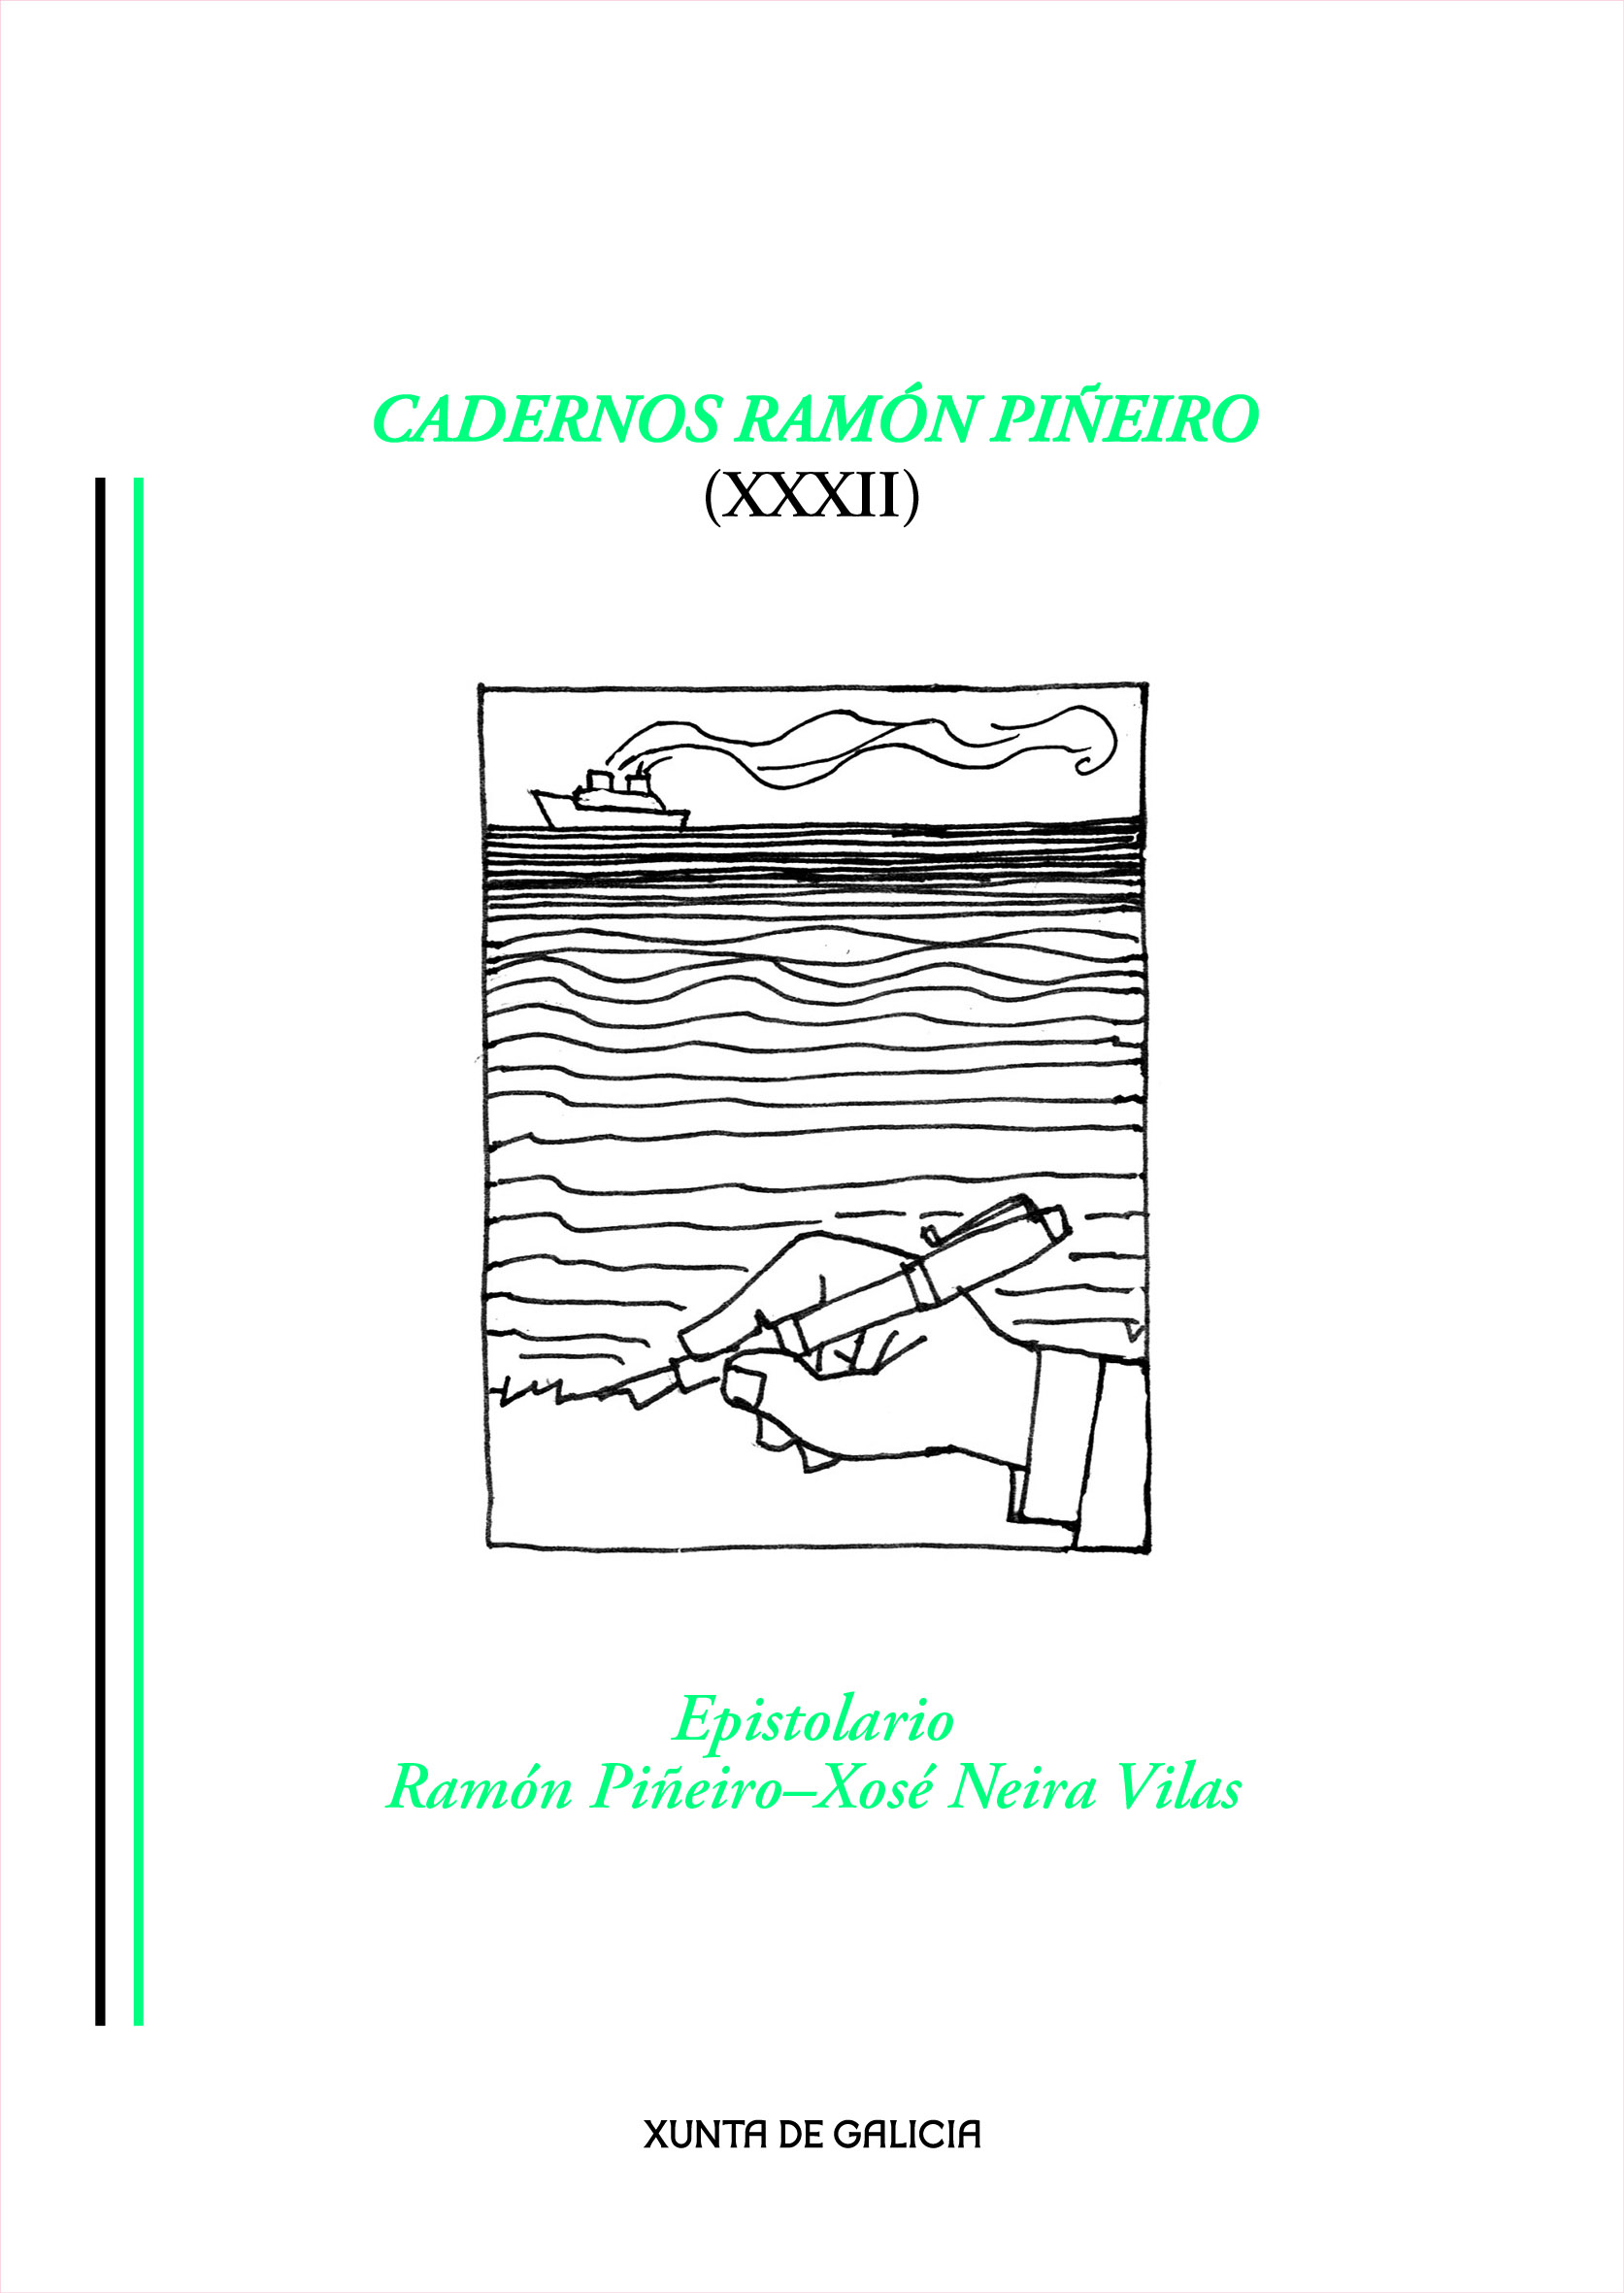 Logo Cadernos Ramón Piñeiro XXXII. Epistolario Ramón Piñeiro - Xosé Neira Vilas